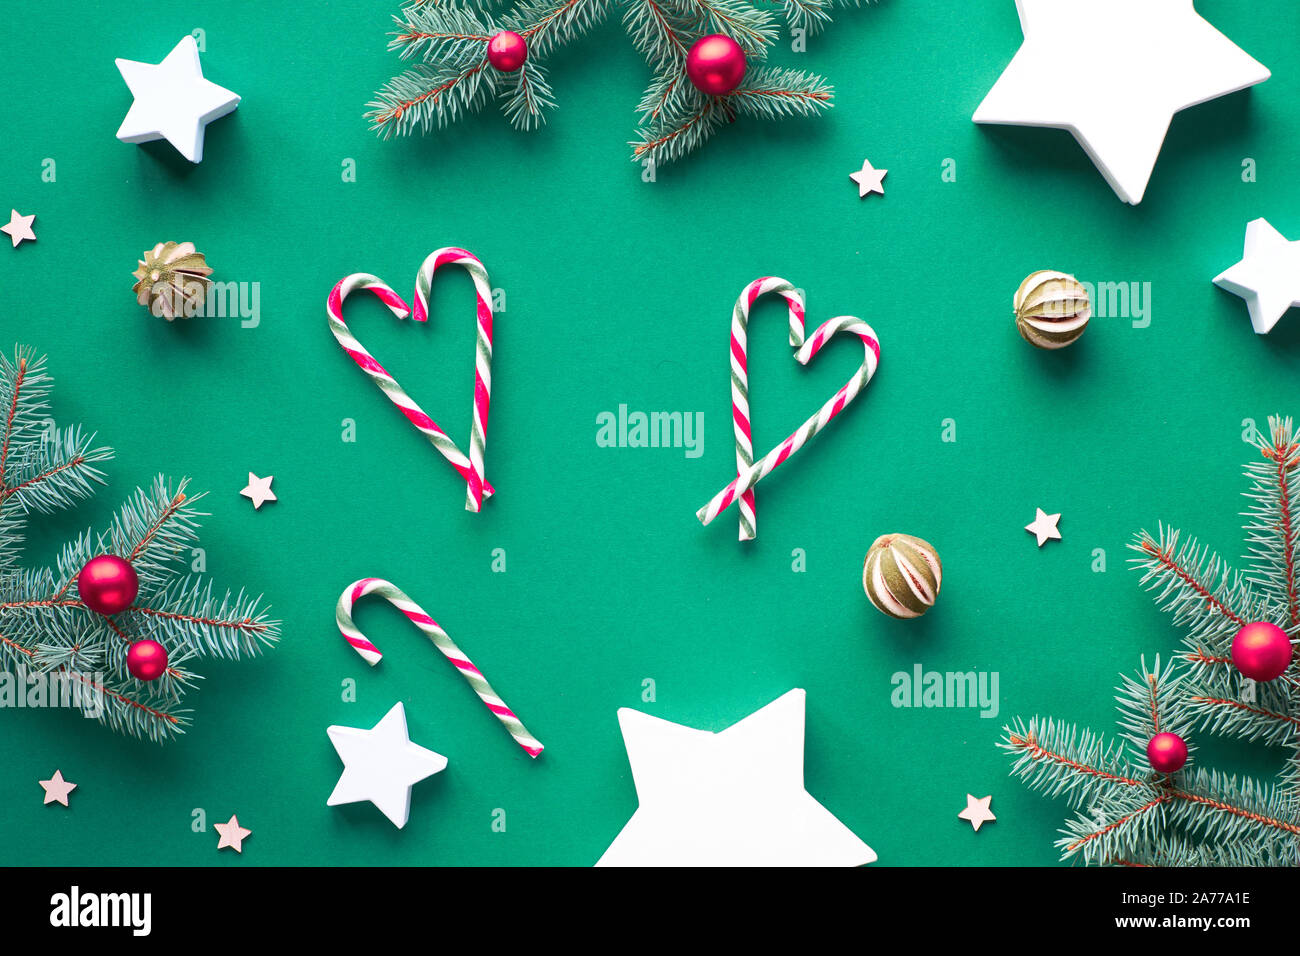 Kreative Weihnachten mit Tanne Zweige legen, Zuckerstangen angeordnet, wie Herzen, rotem Glas Kugeln und trockenen Kalk Früchte. Papier geschenkboxen als Stars geprägt. Z Stockfoto